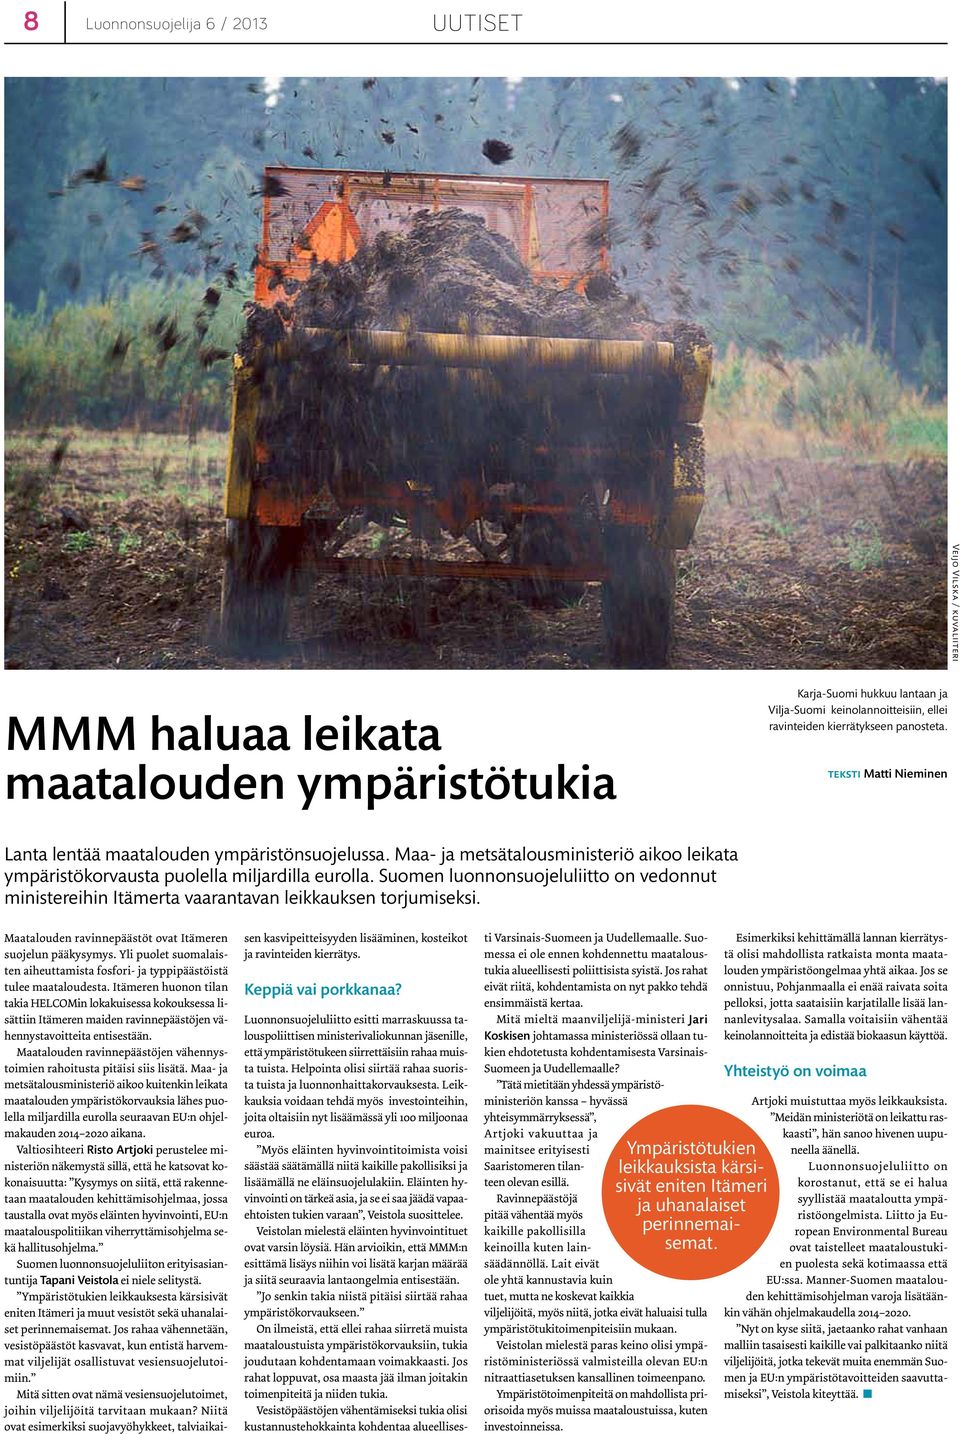 Suomen luonnonsuojeluliitto on vedonnut ministereihin Itämerta vaarantavan leikkauksen torjumiseksi. Maatalouden ravinnepäästöt ovat Itämeren suojelun pääkysymys.